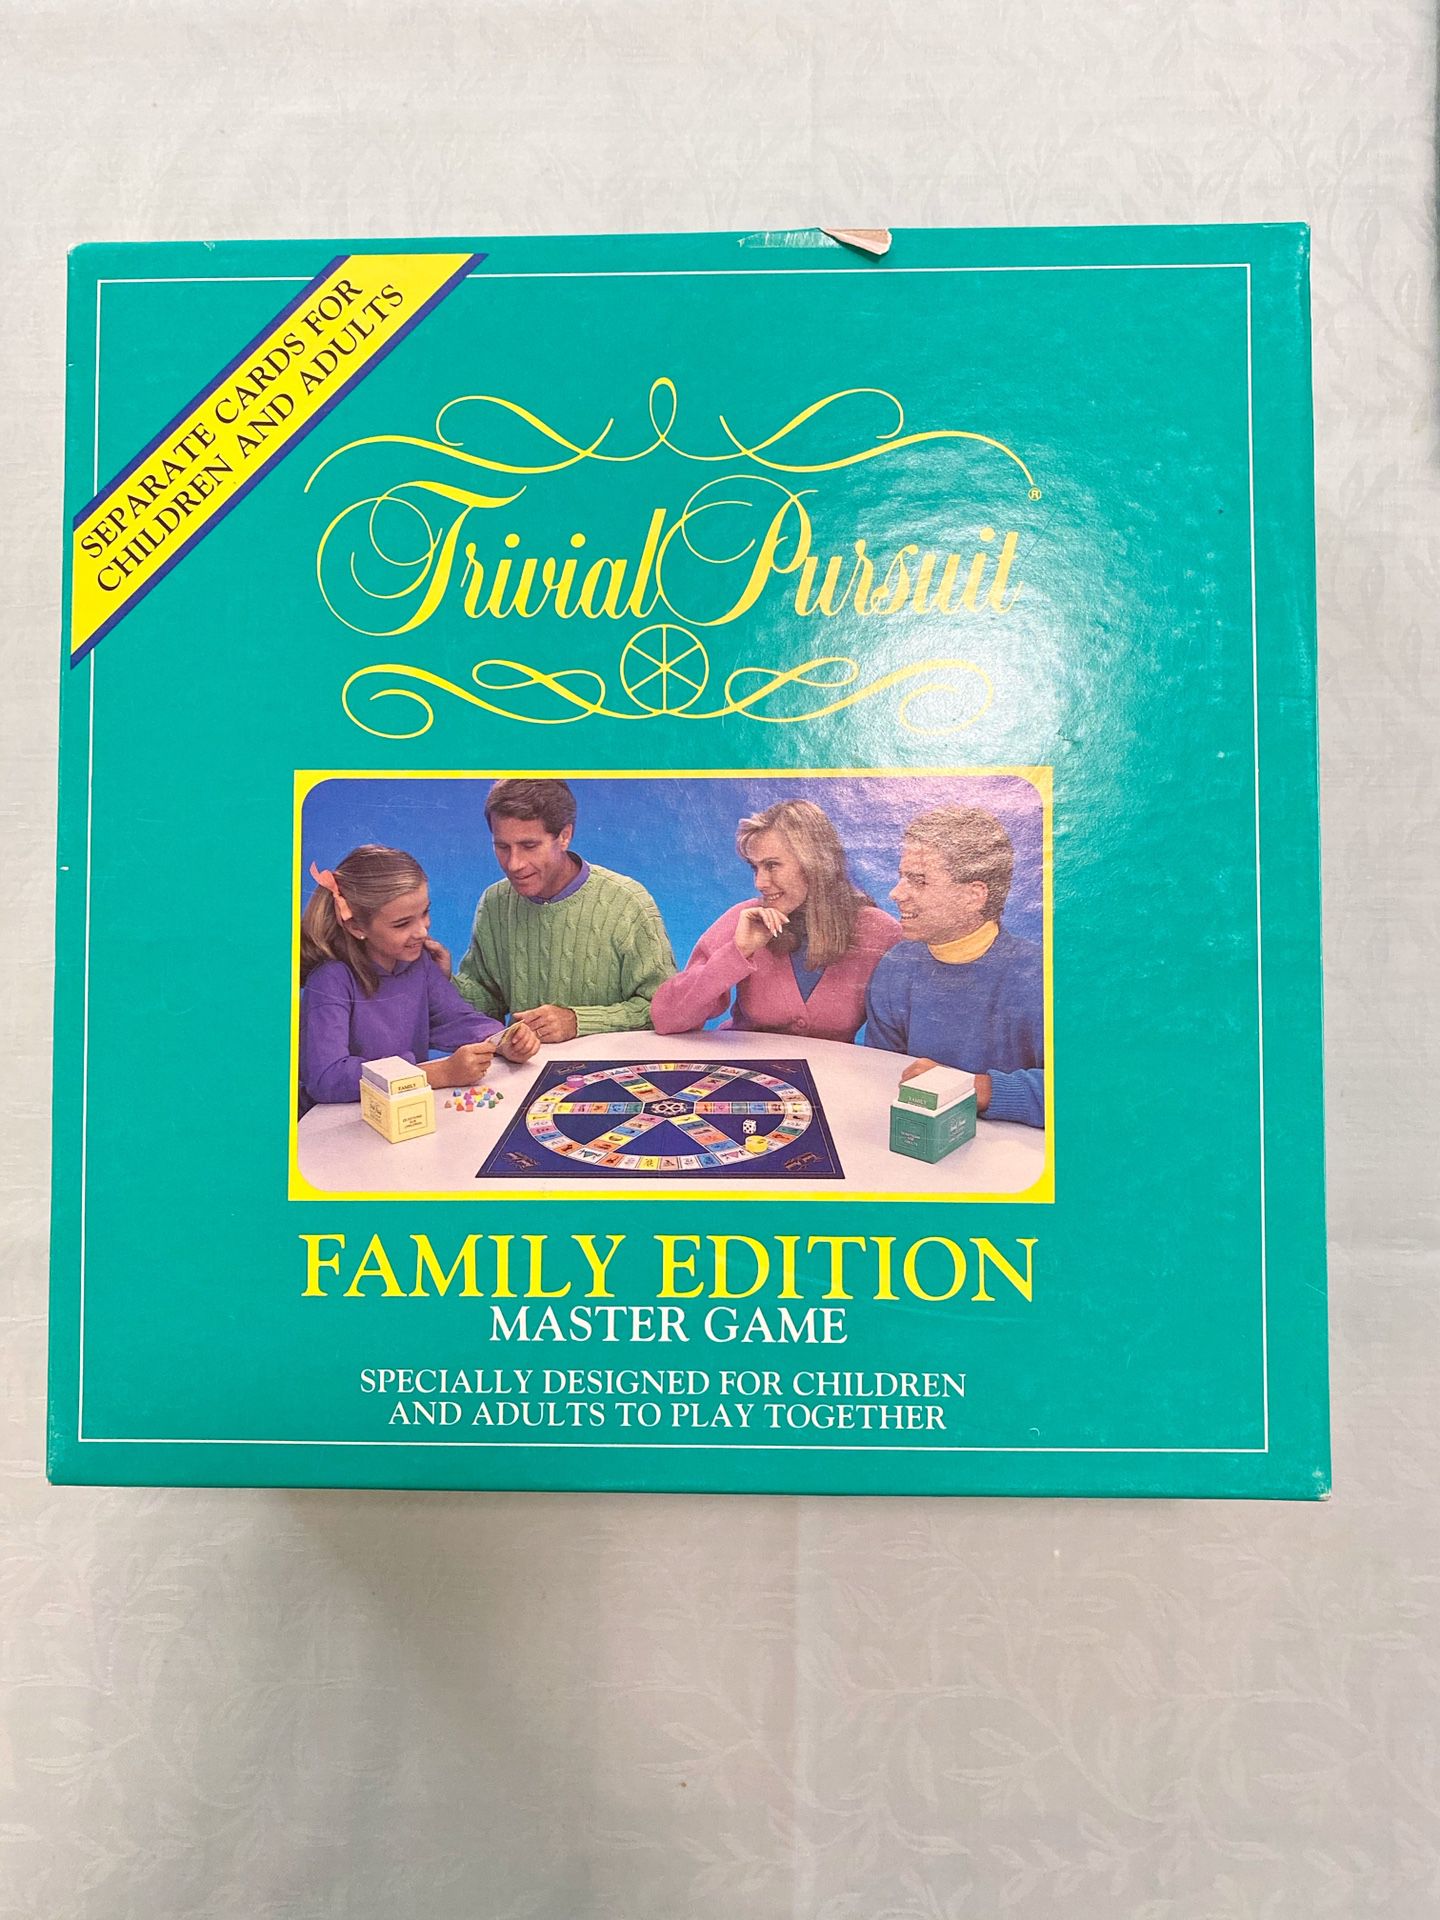 Parker Trivial Pursuit Family Edition